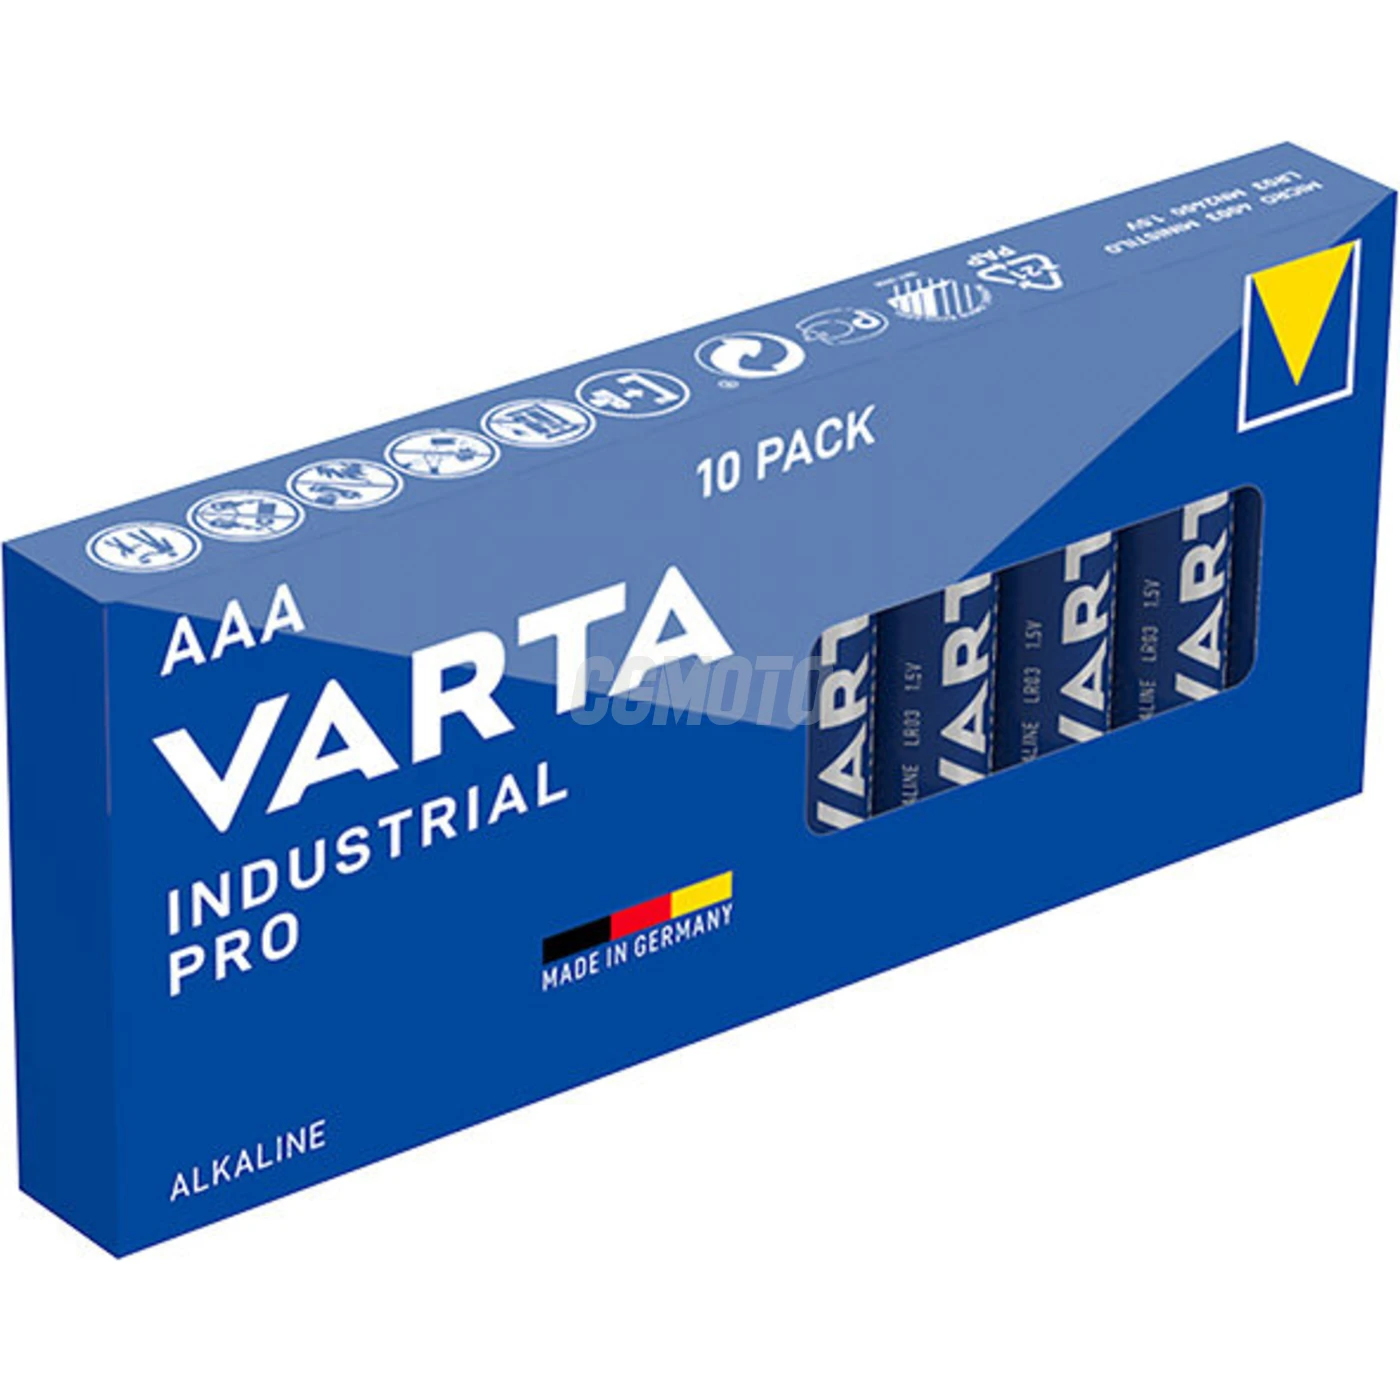 Varta Industrial PRO MINI STILO/AAA x 10 pile